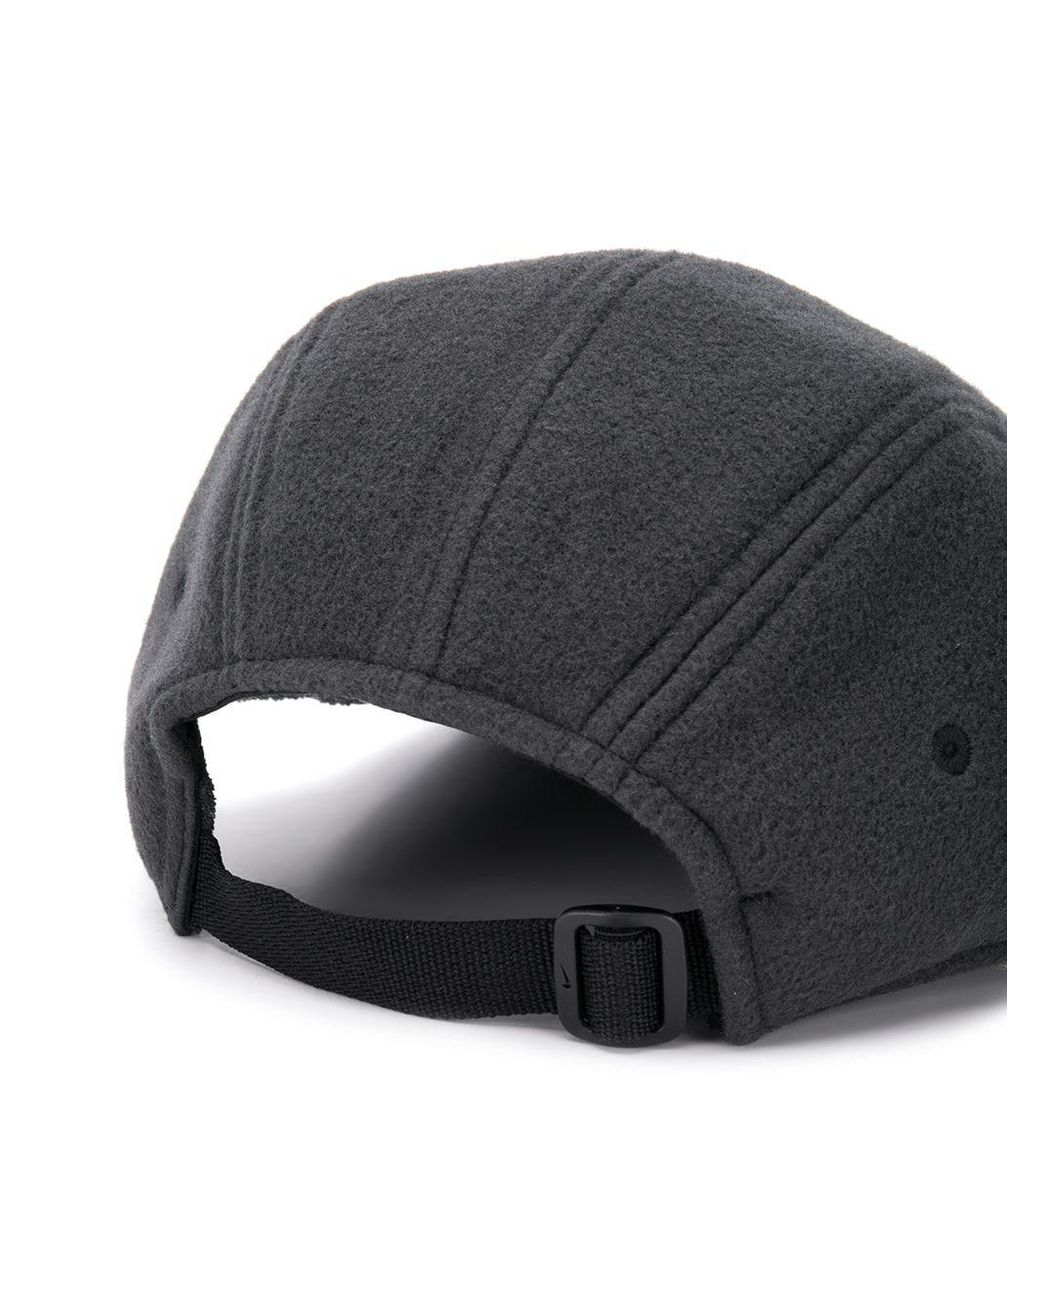 Nike - Chapeaux, bonnets & casquettes pour homme - FARFETCH